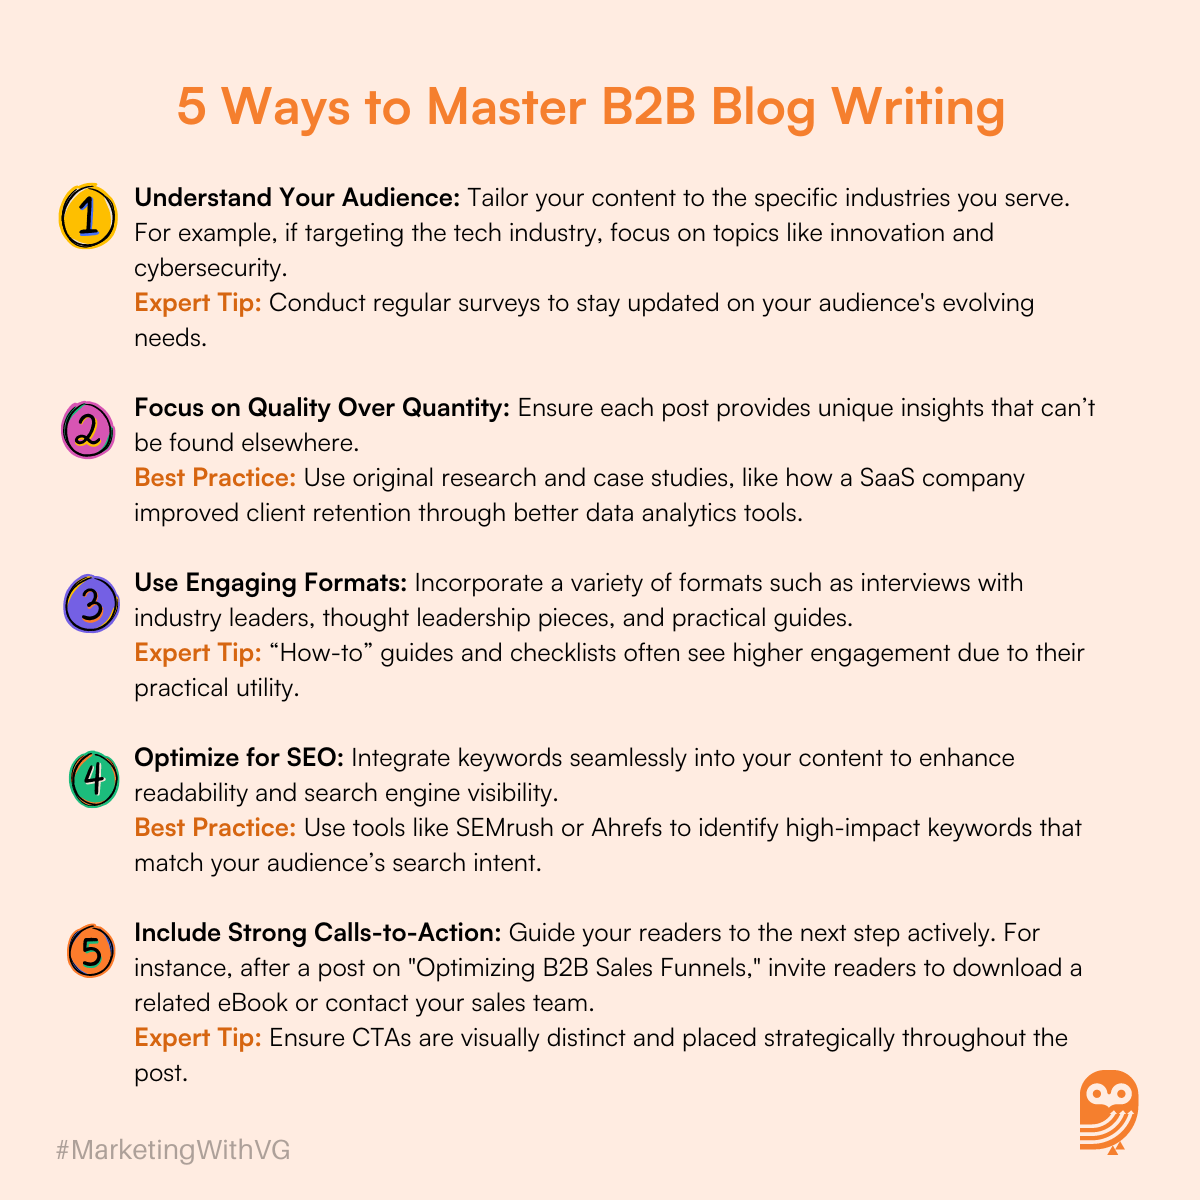 5 Ways to Master B2B Blog Writing